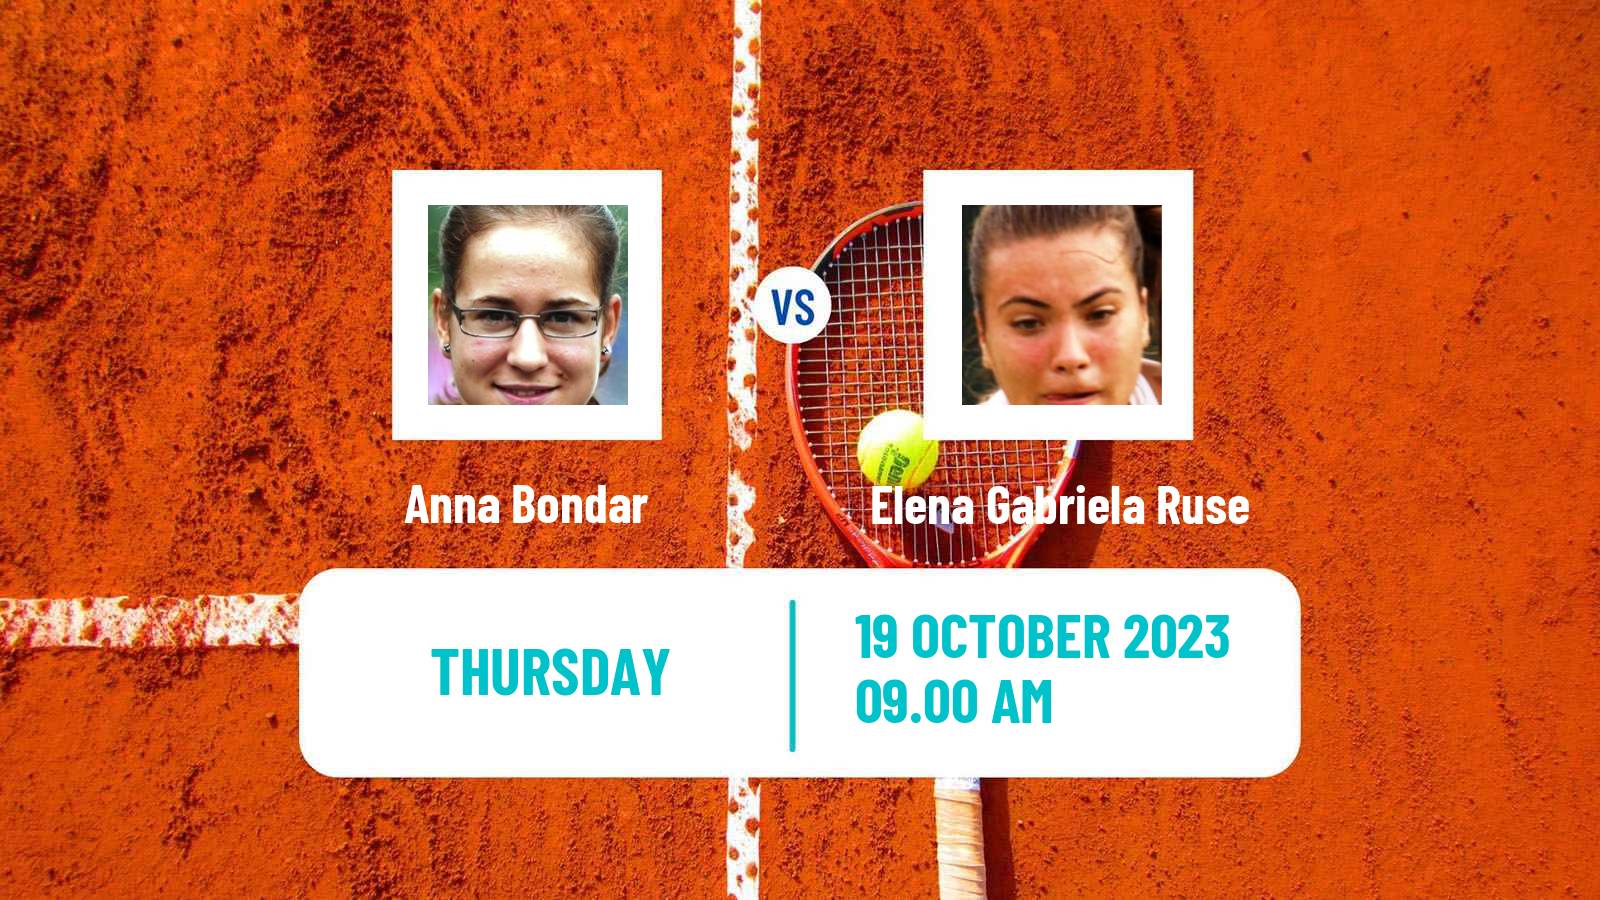 Tennis WTA Cluj Napoca Anna Bondar - Elena Gabriela Ruse